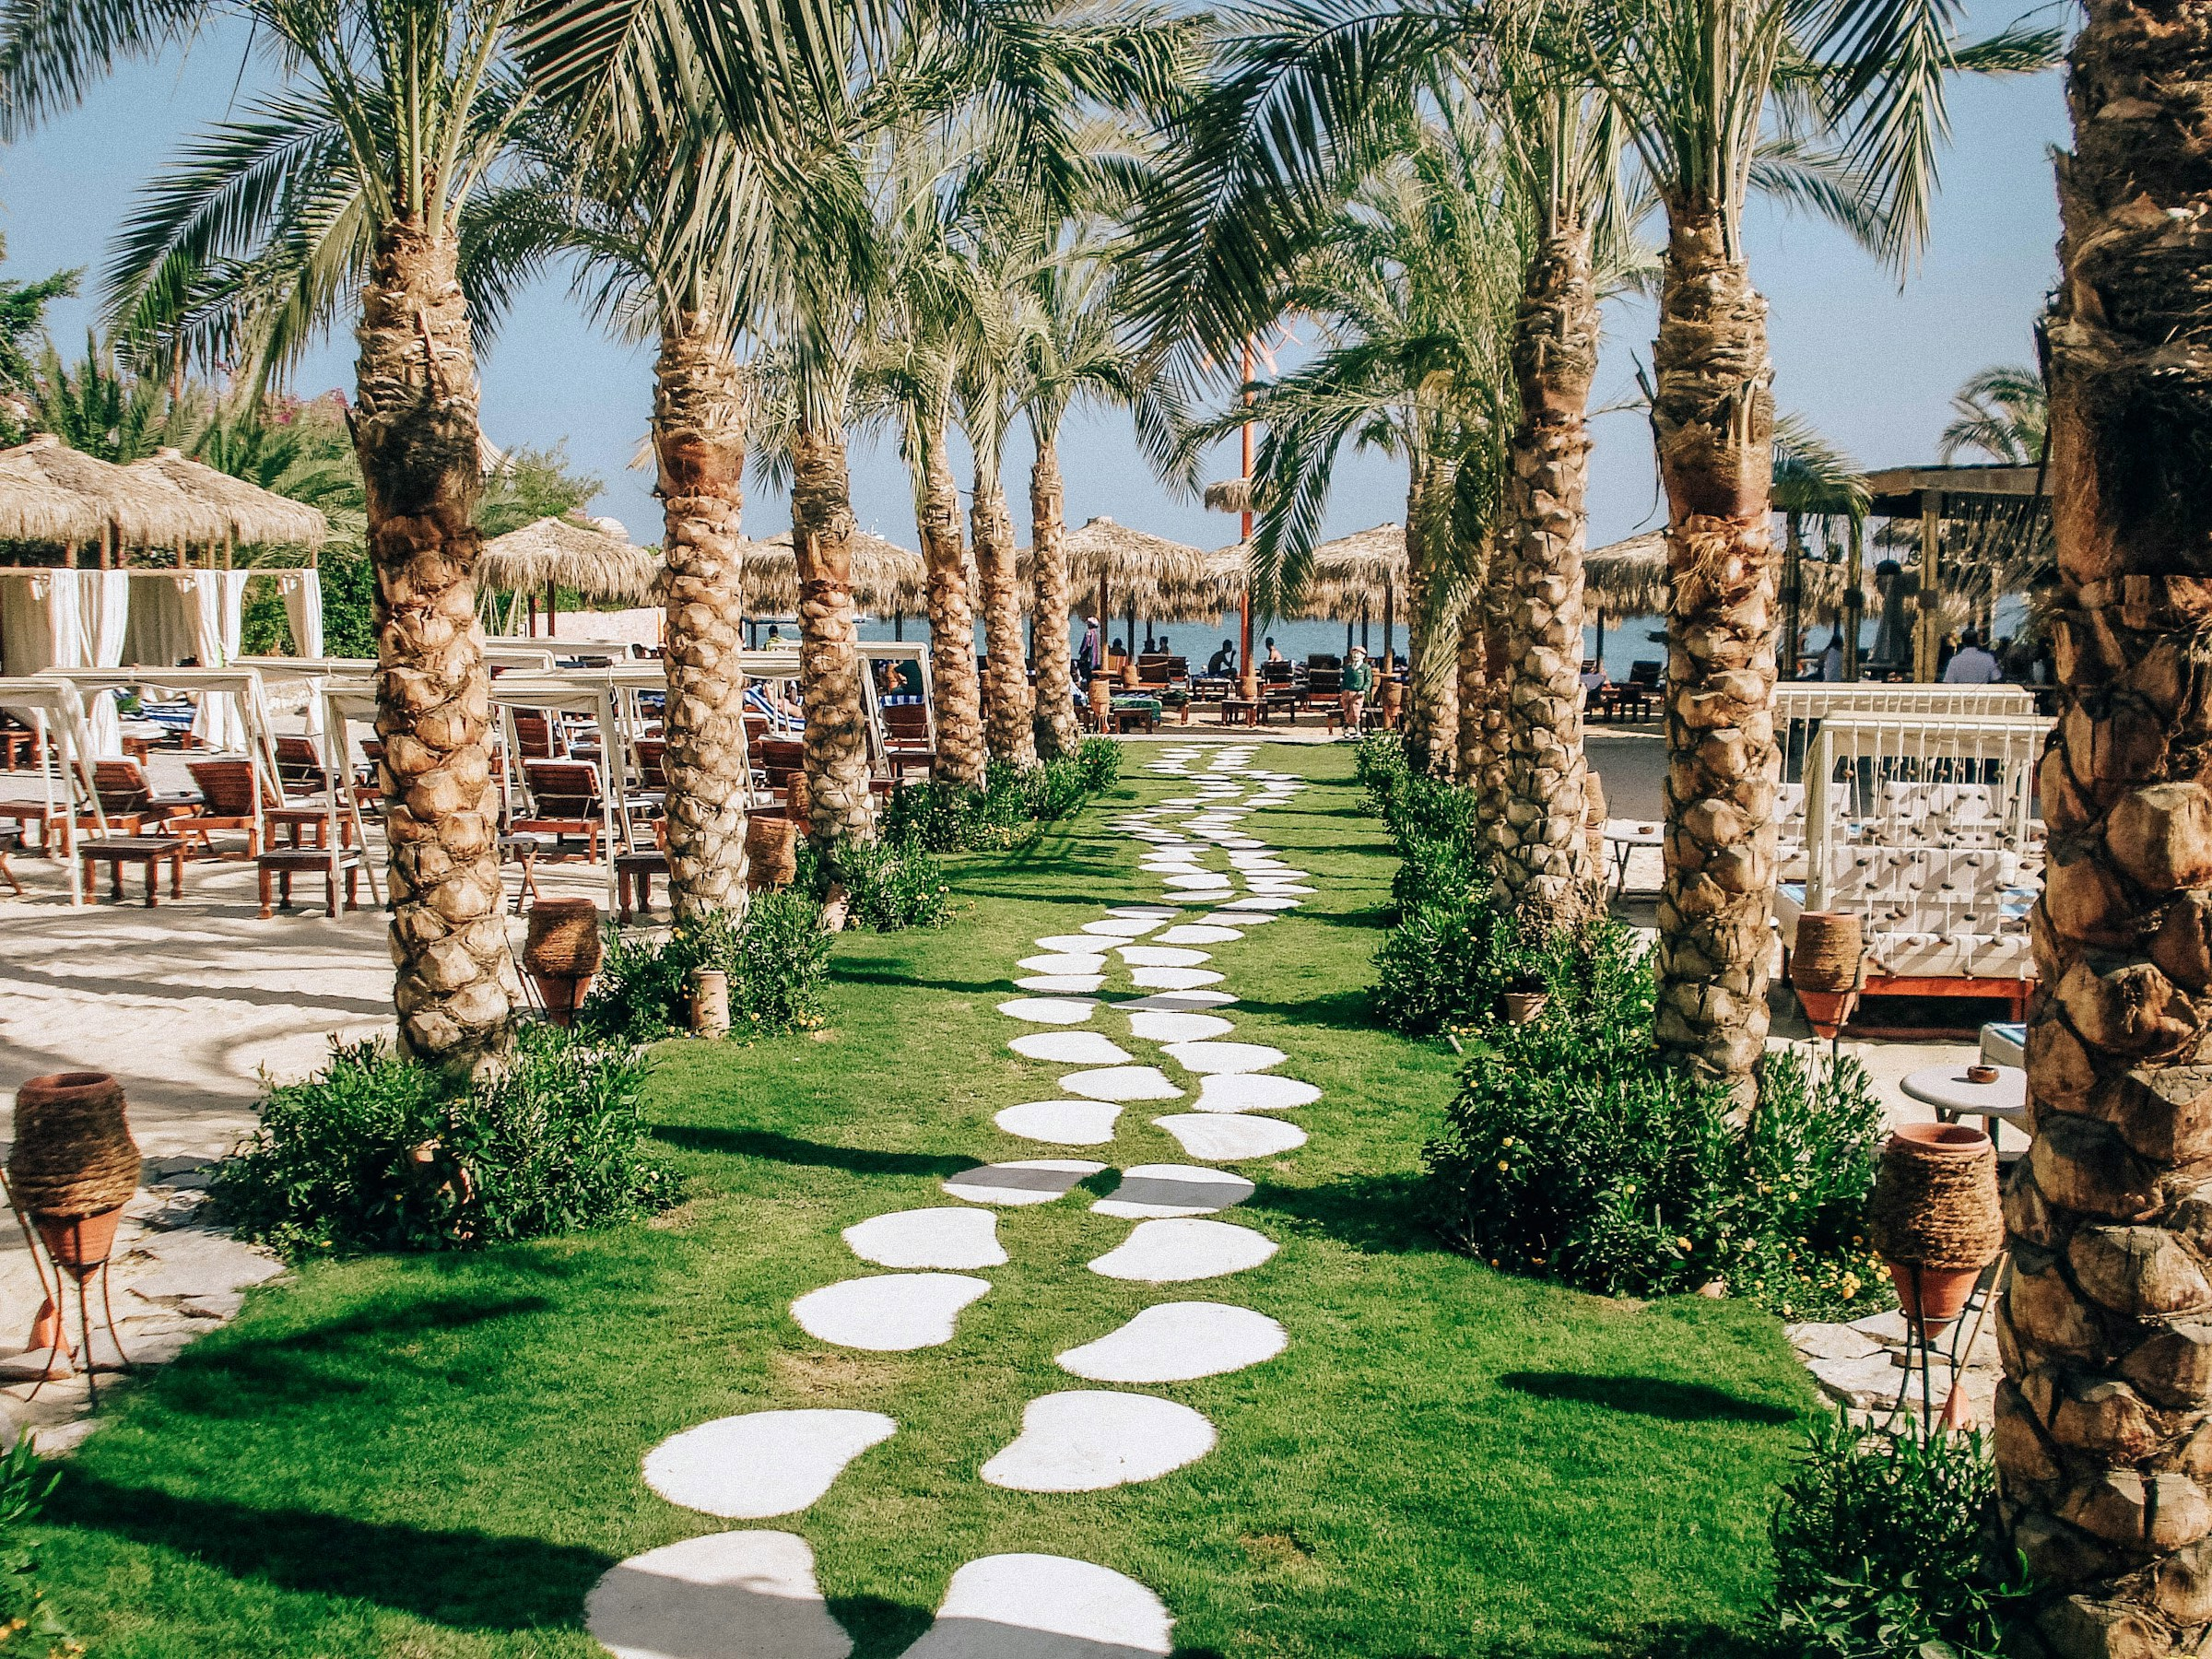 Stig av stenplattor genom grönt gräs omgivet av palmer på i ett soligt Hurghada.